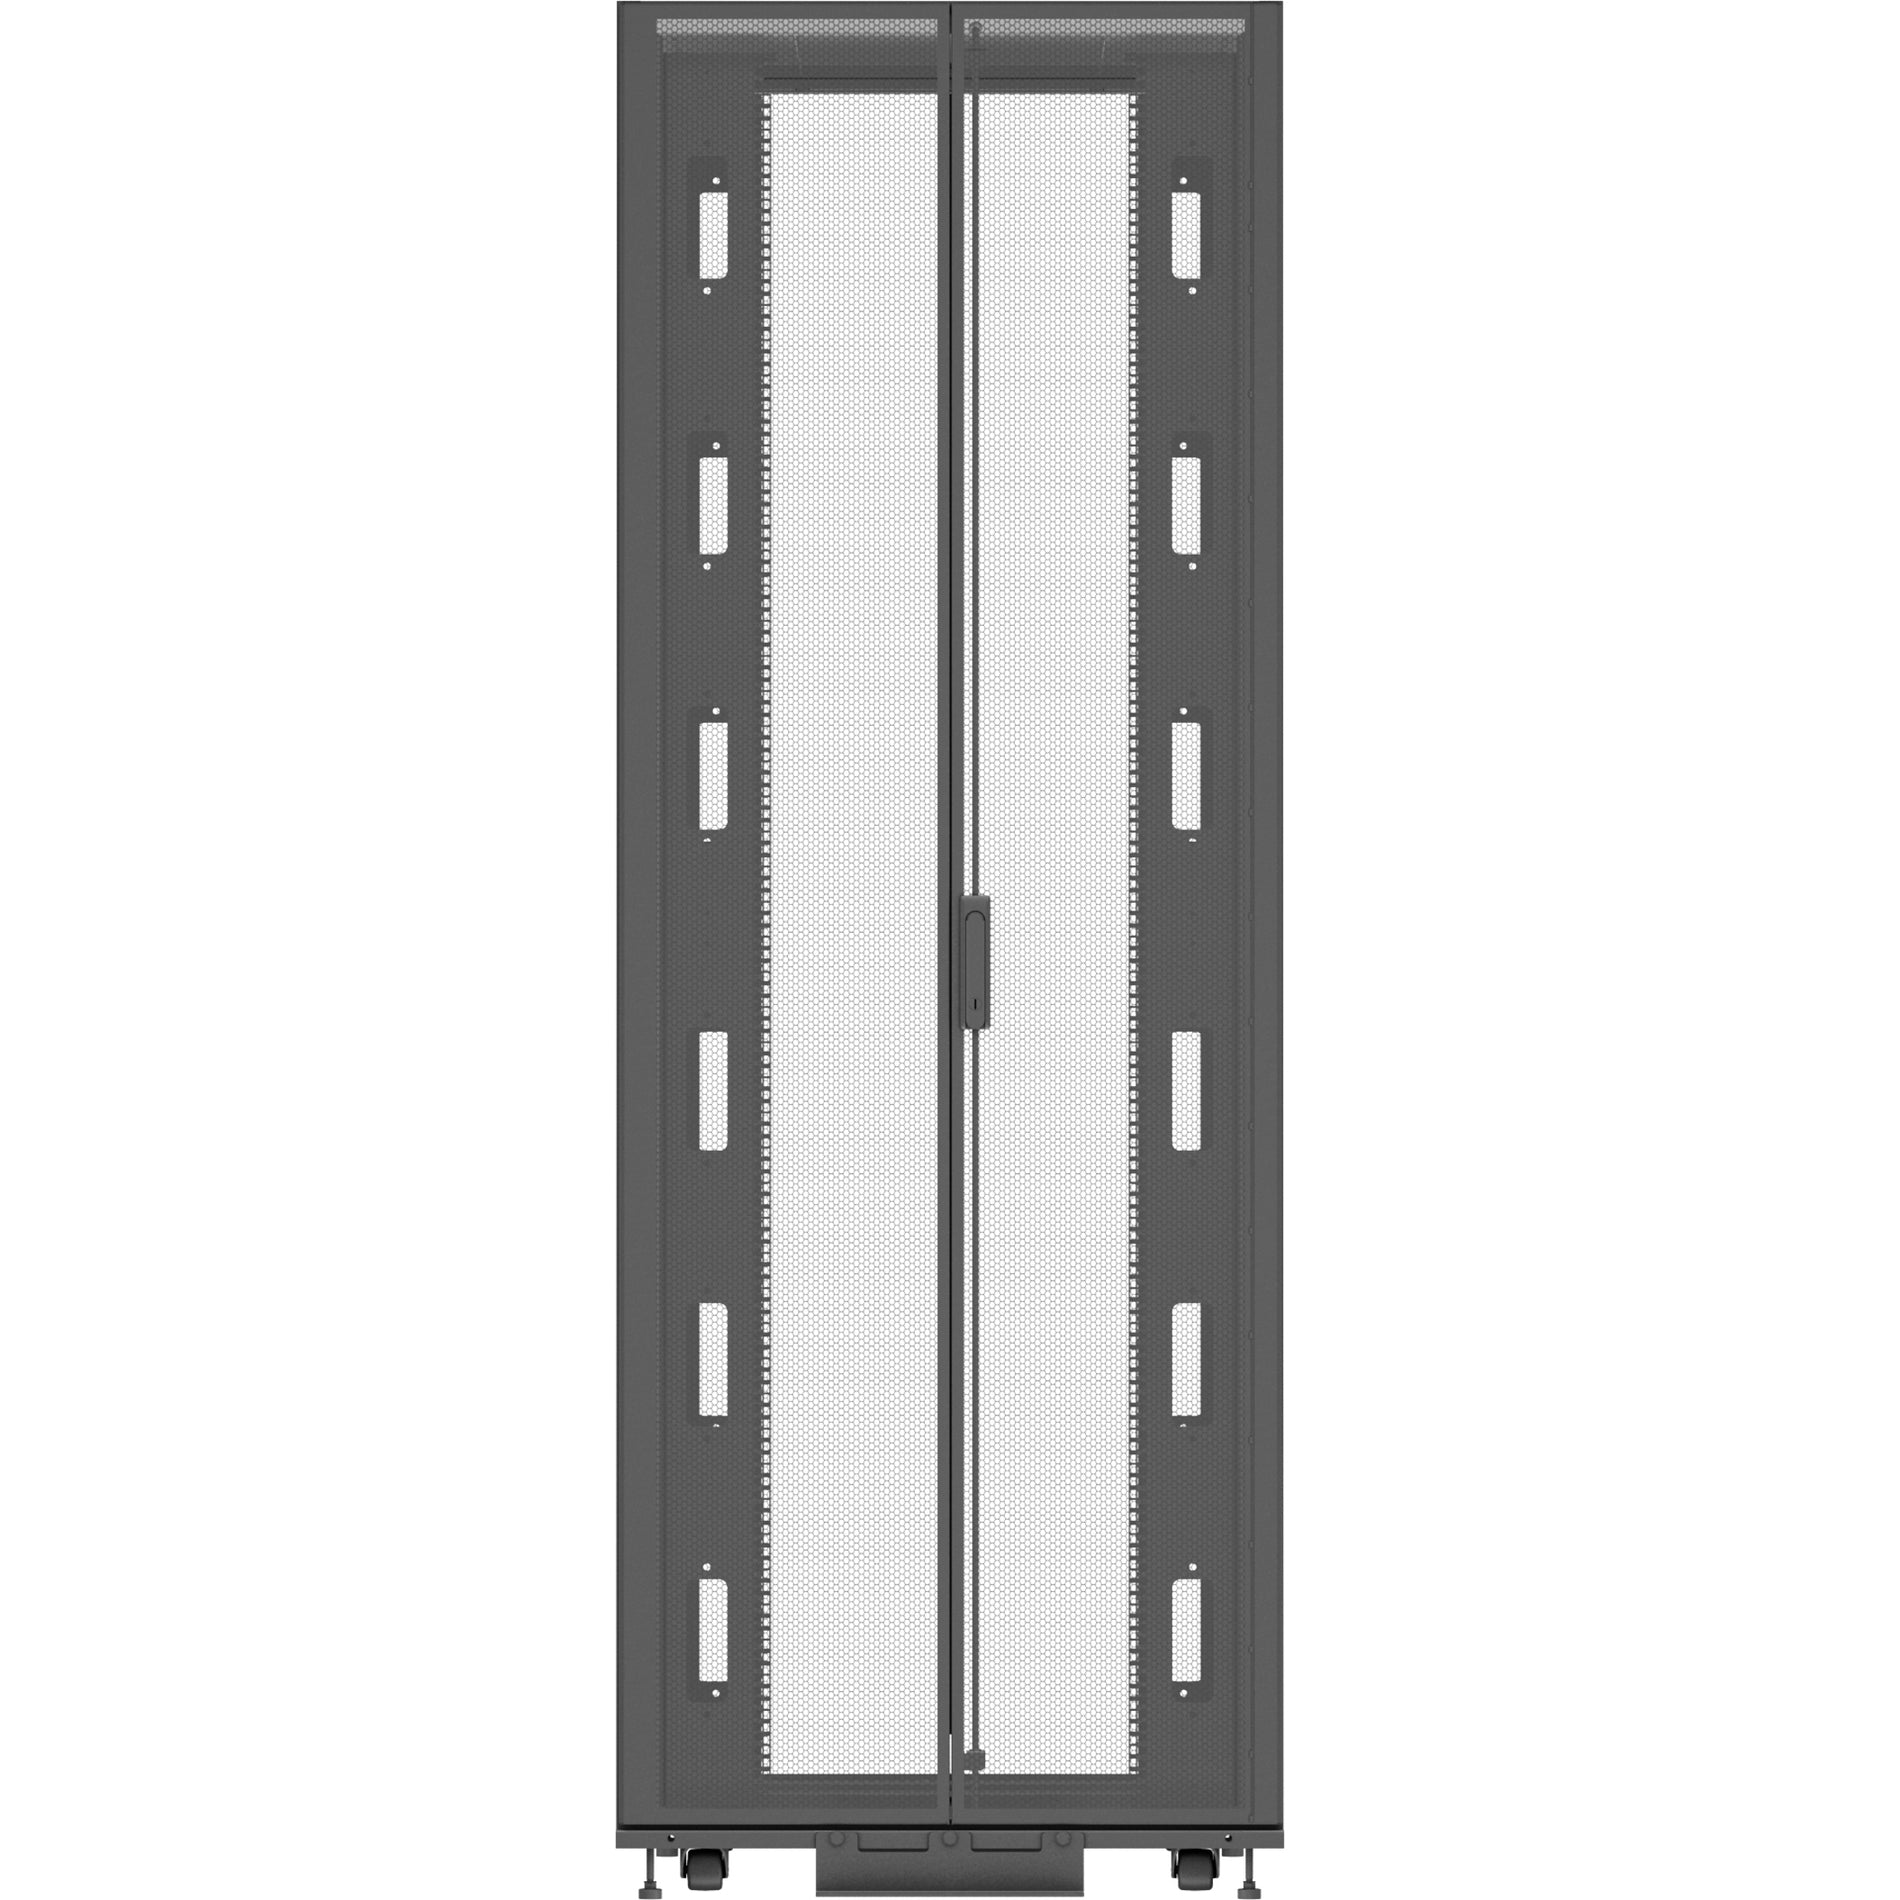 Vertiv VR Rack - 48U Server Rack Enclosure| 800x1100mm| 19-inch Cabinet (VR3157)